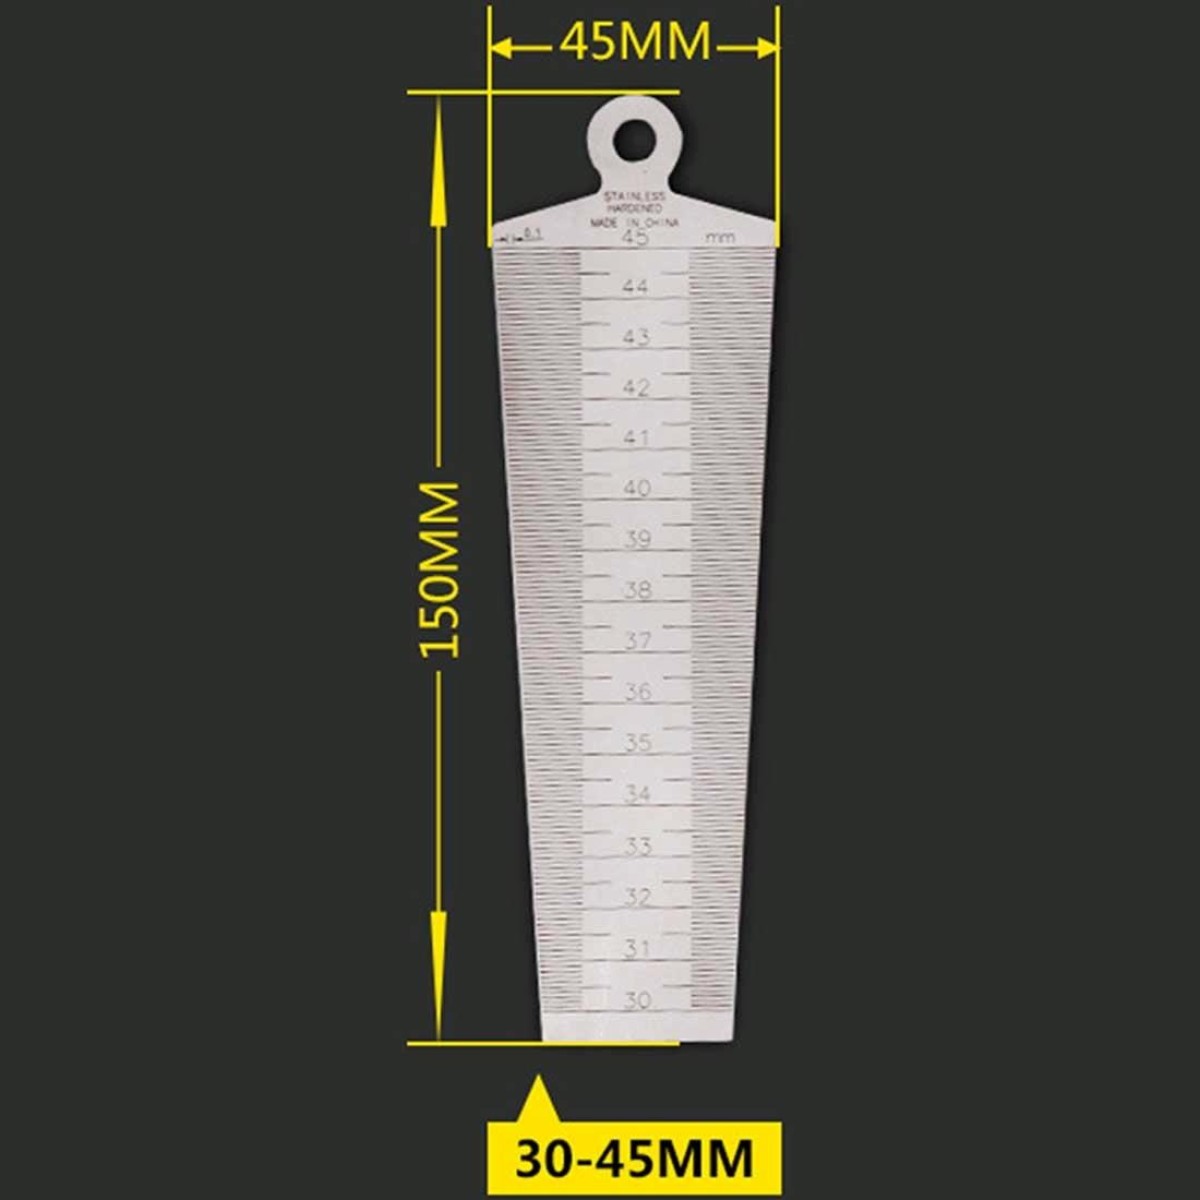 Wedge Feeler Gap 30-45mm Stainless Steel Ruler Inspection Taper Gauge Metric Measure Tool